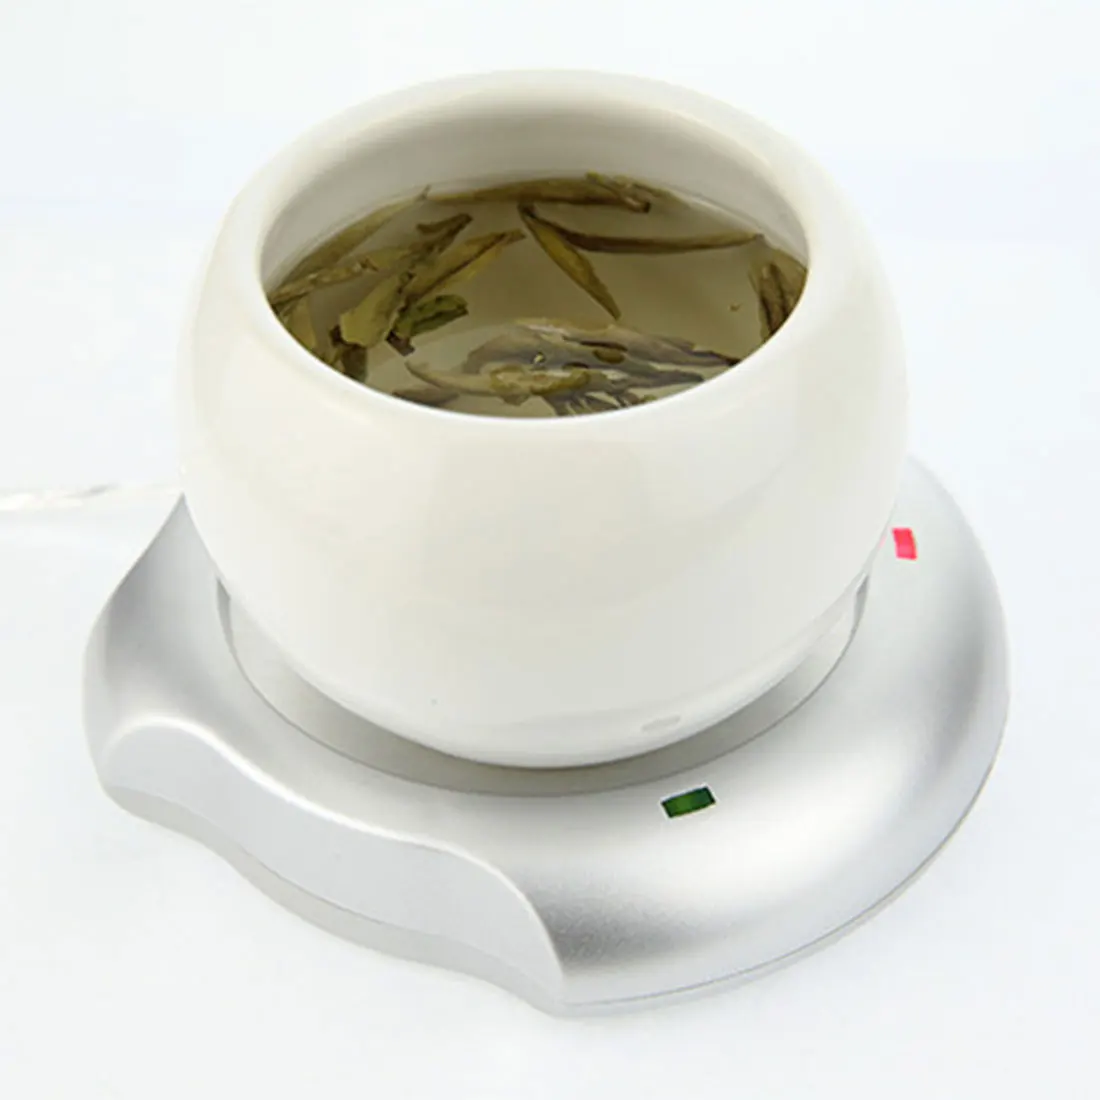 Креативный USB нагревательный коврик портативная электрическая чашка для чая кофе кружка для напитков подогреватель грелка с 4 портами usb-хаб с переключателем ВКЛ/ВЫКЛ